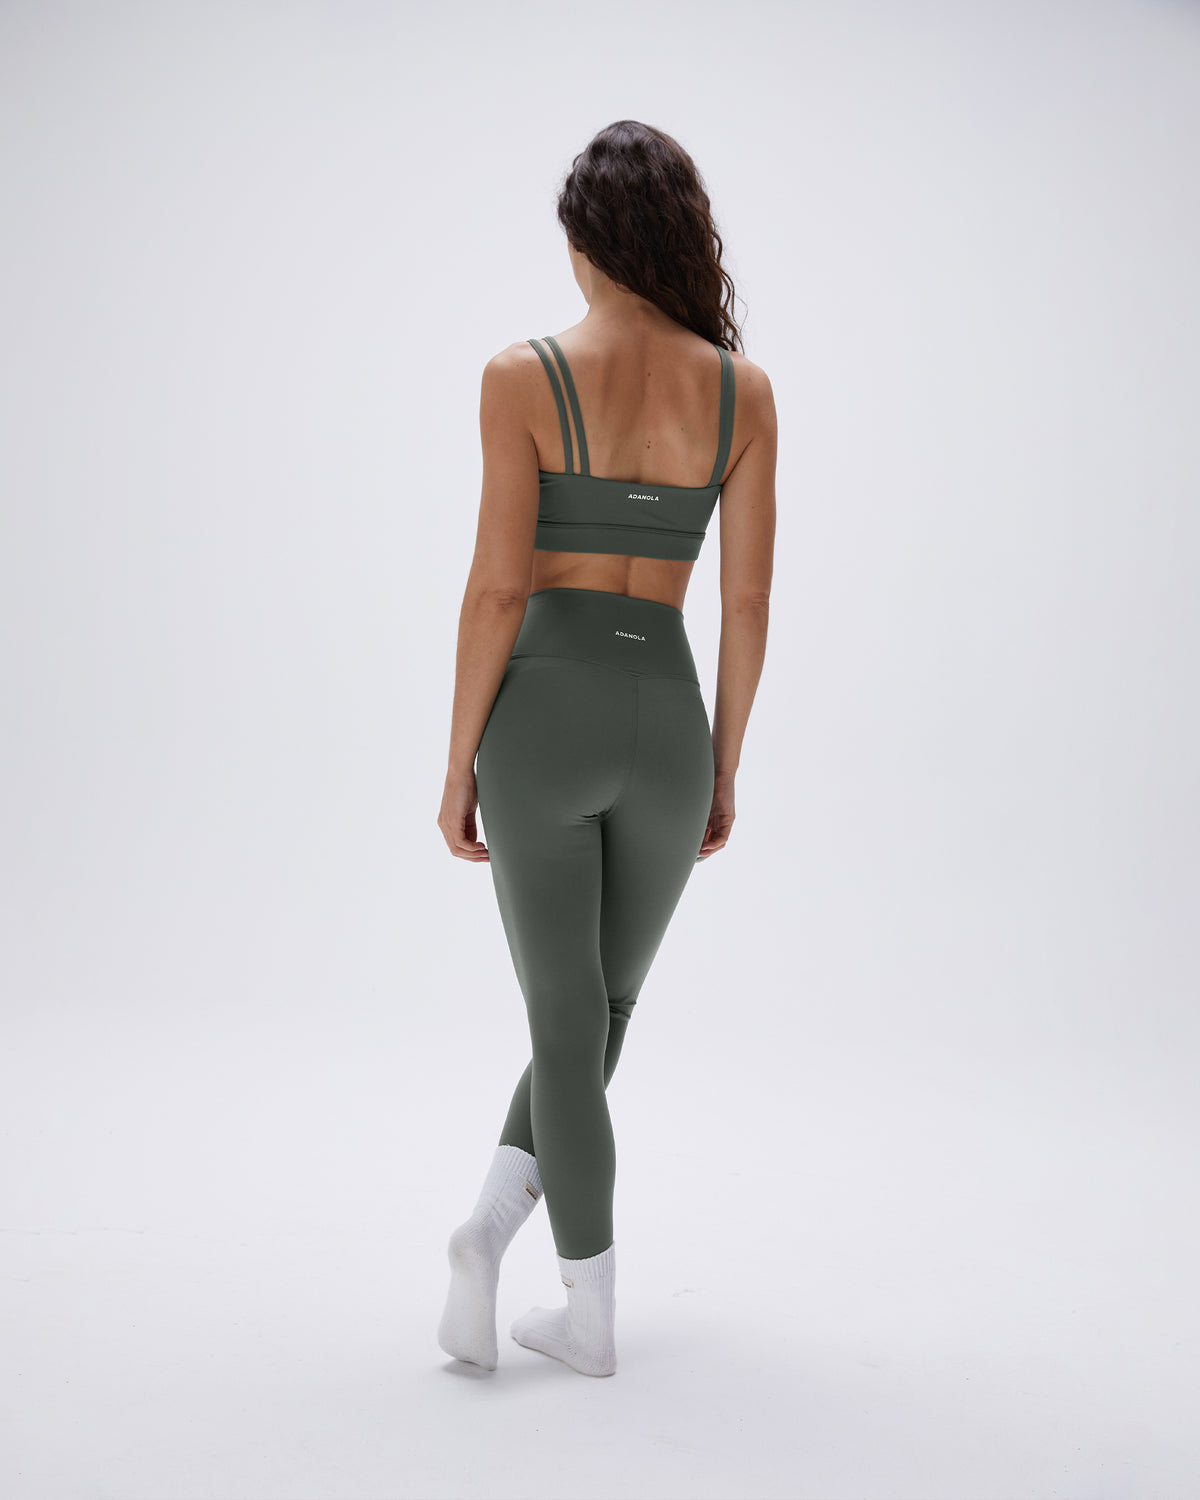 Women's Green Double Strap Sports Bras